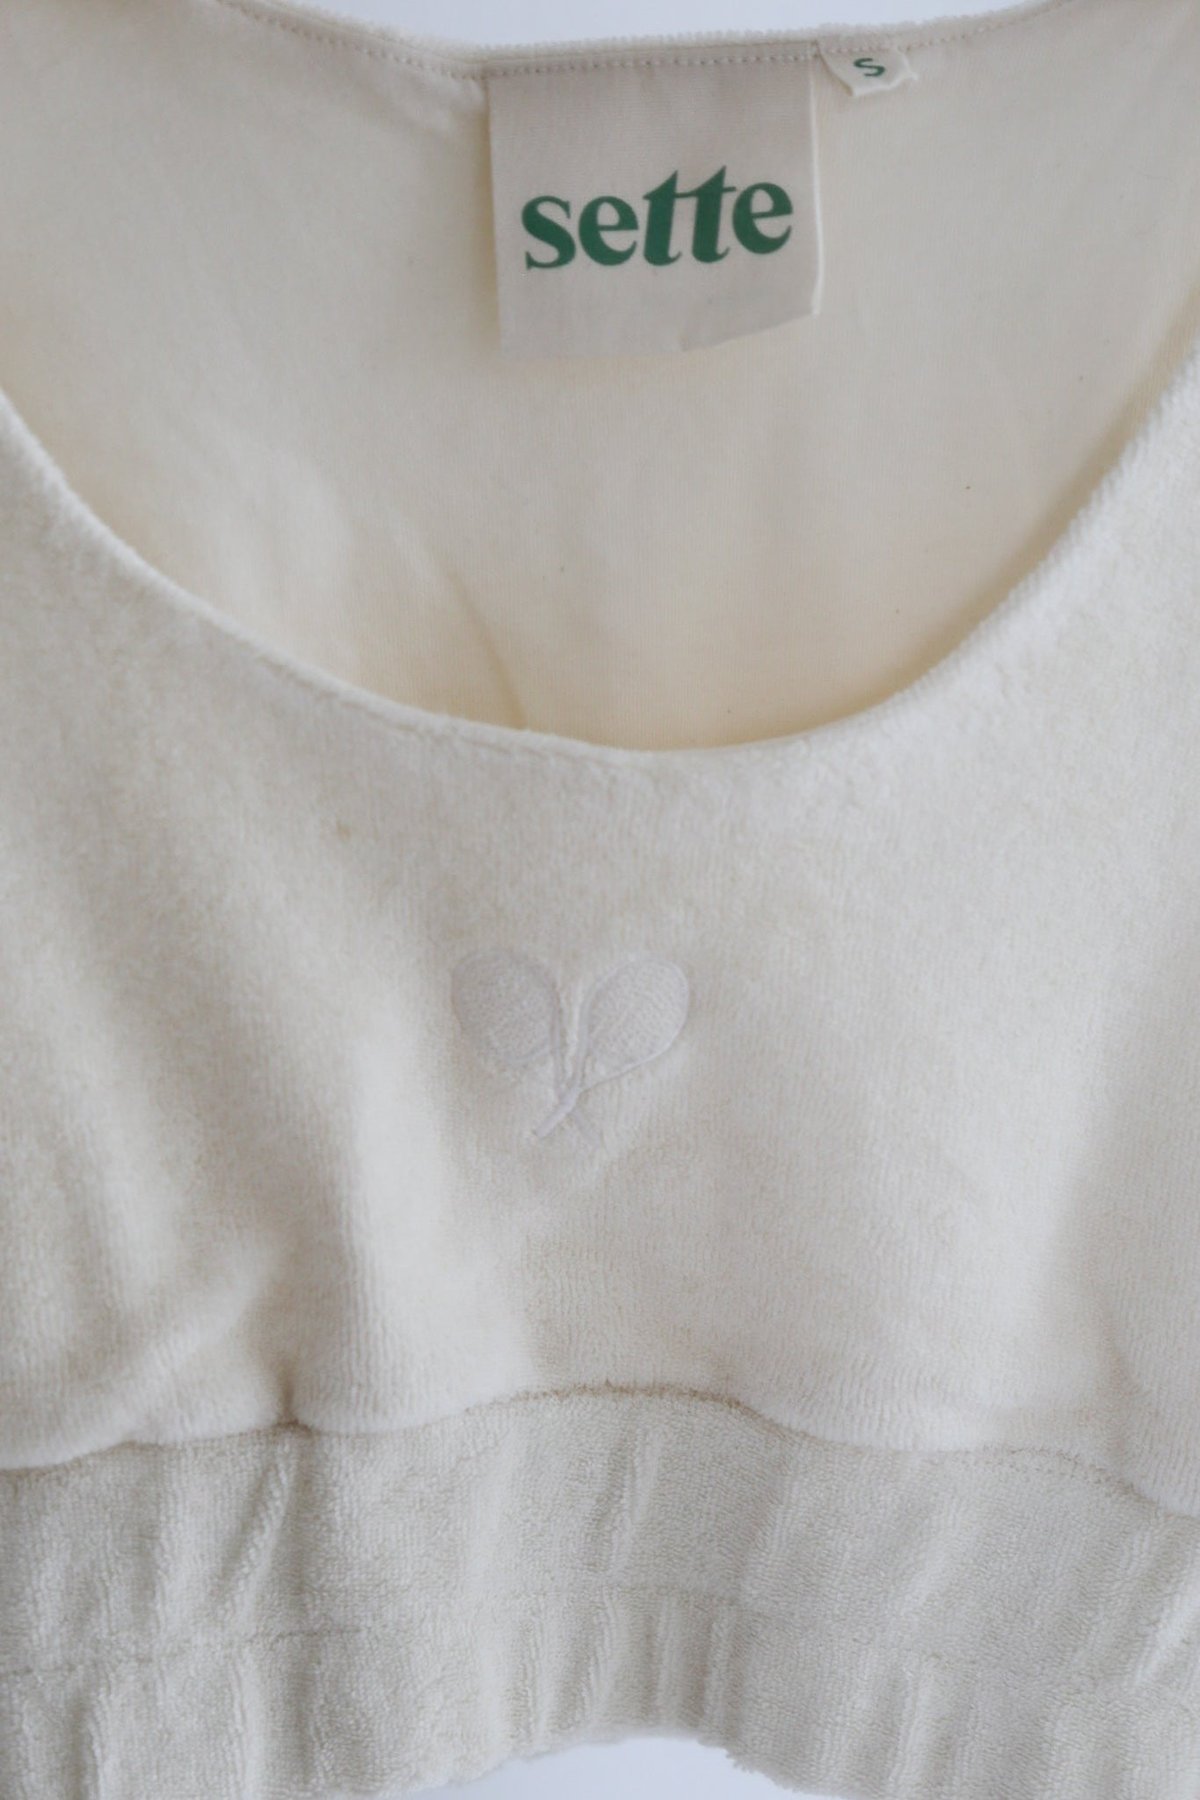 Towel Boy Bra Top - Vintage White – sette